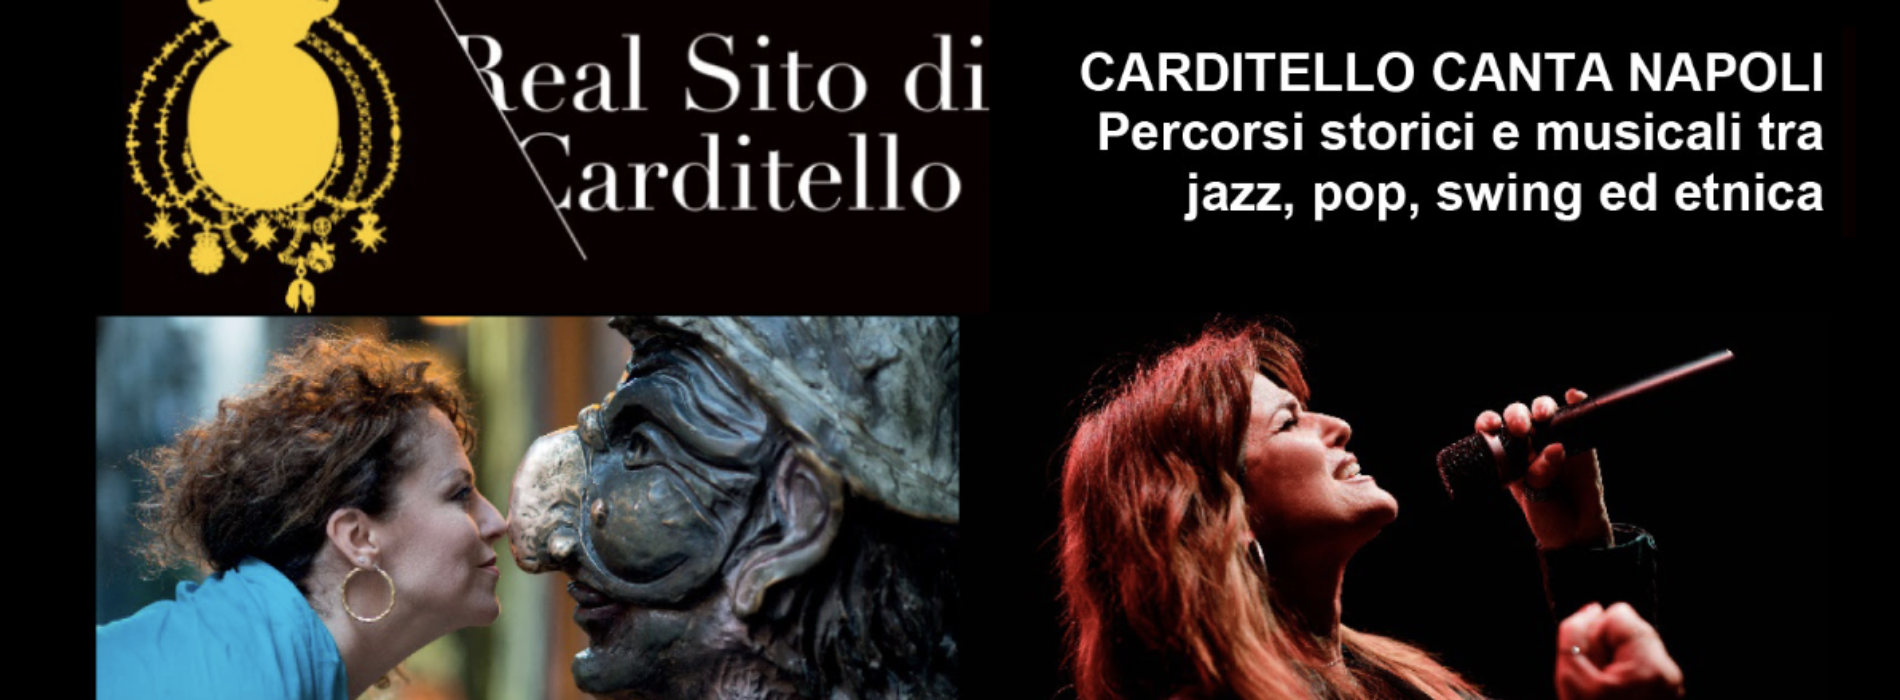 Carditello canta Napoli, dal 15 febbraio al Real sito